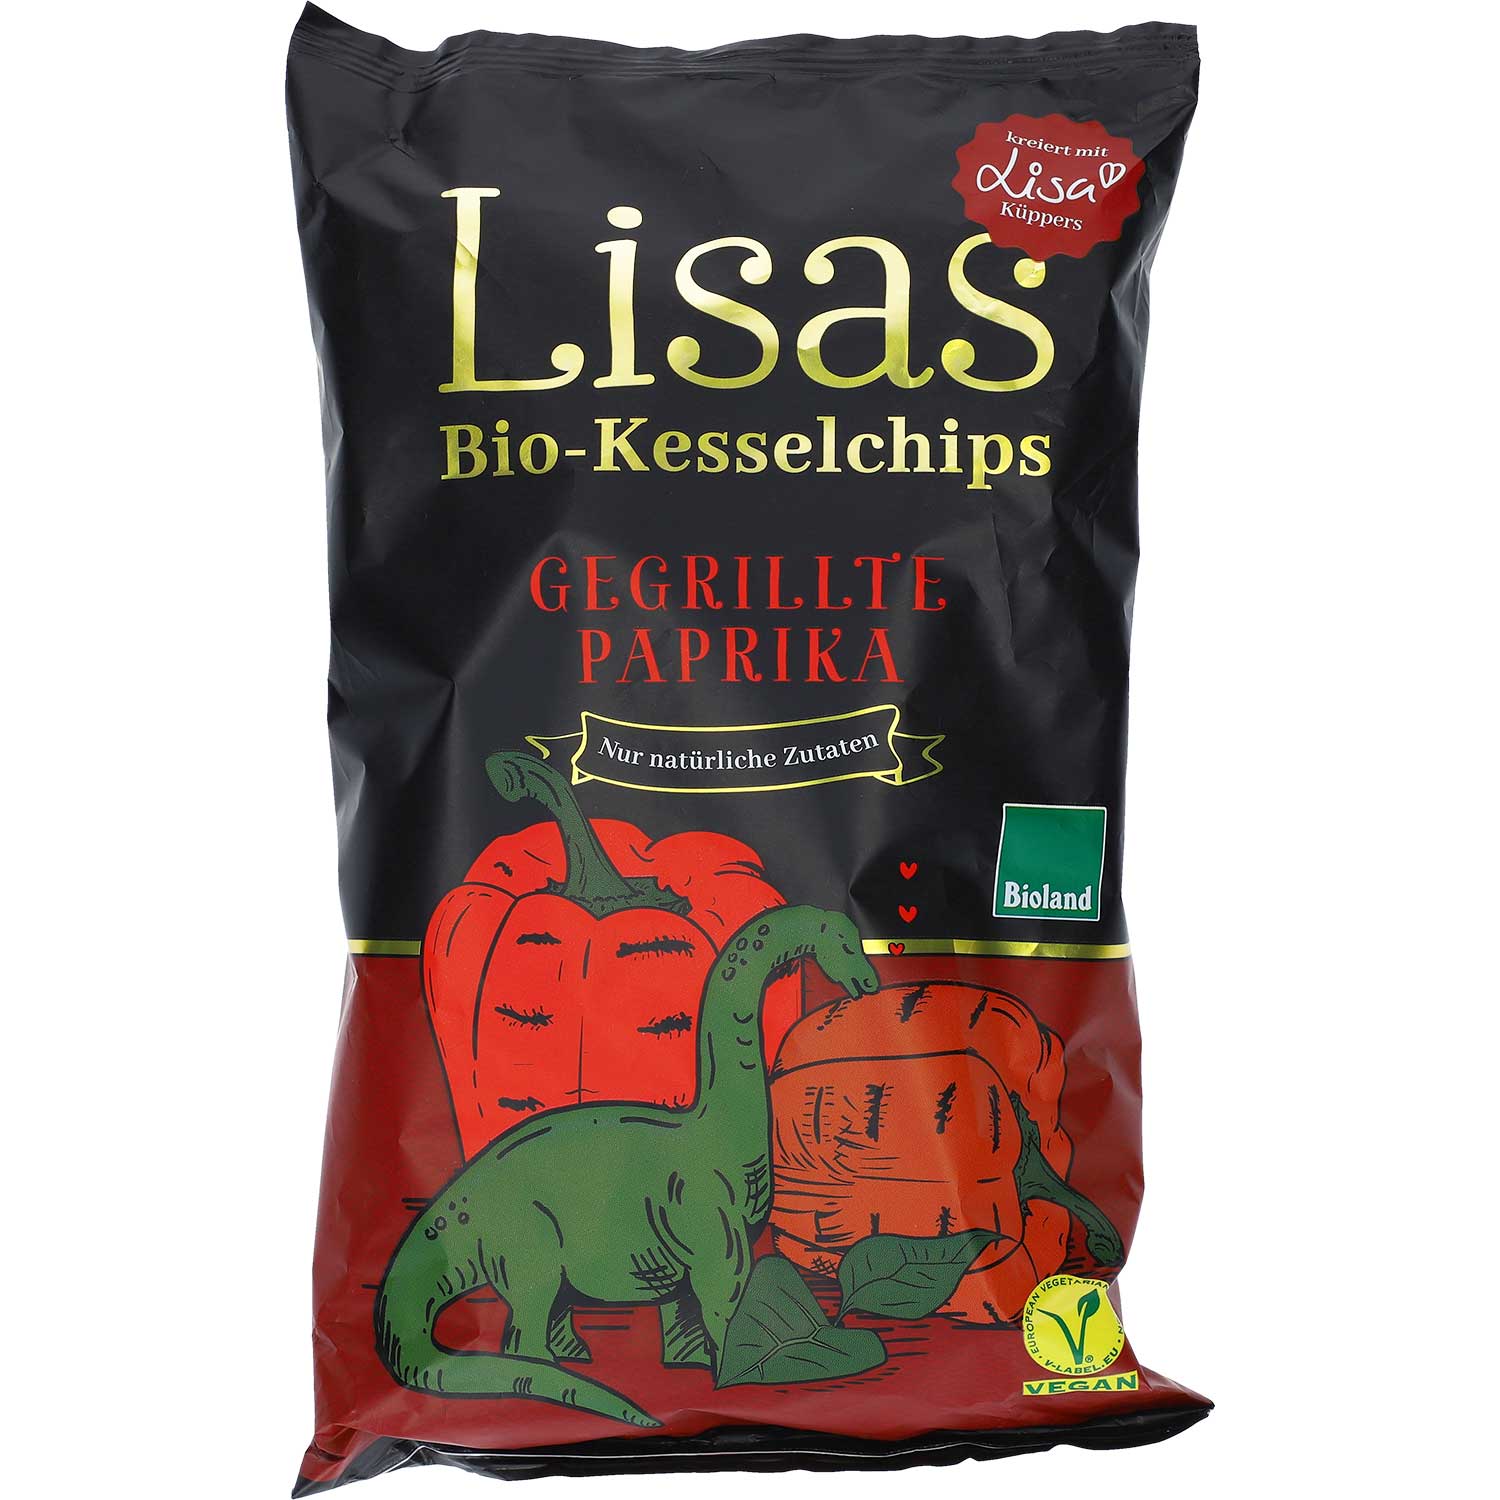 Lisas Bio-Kesselchips Gegrillte Paprika 125g | Online kaufen im World of  Sweets Shop